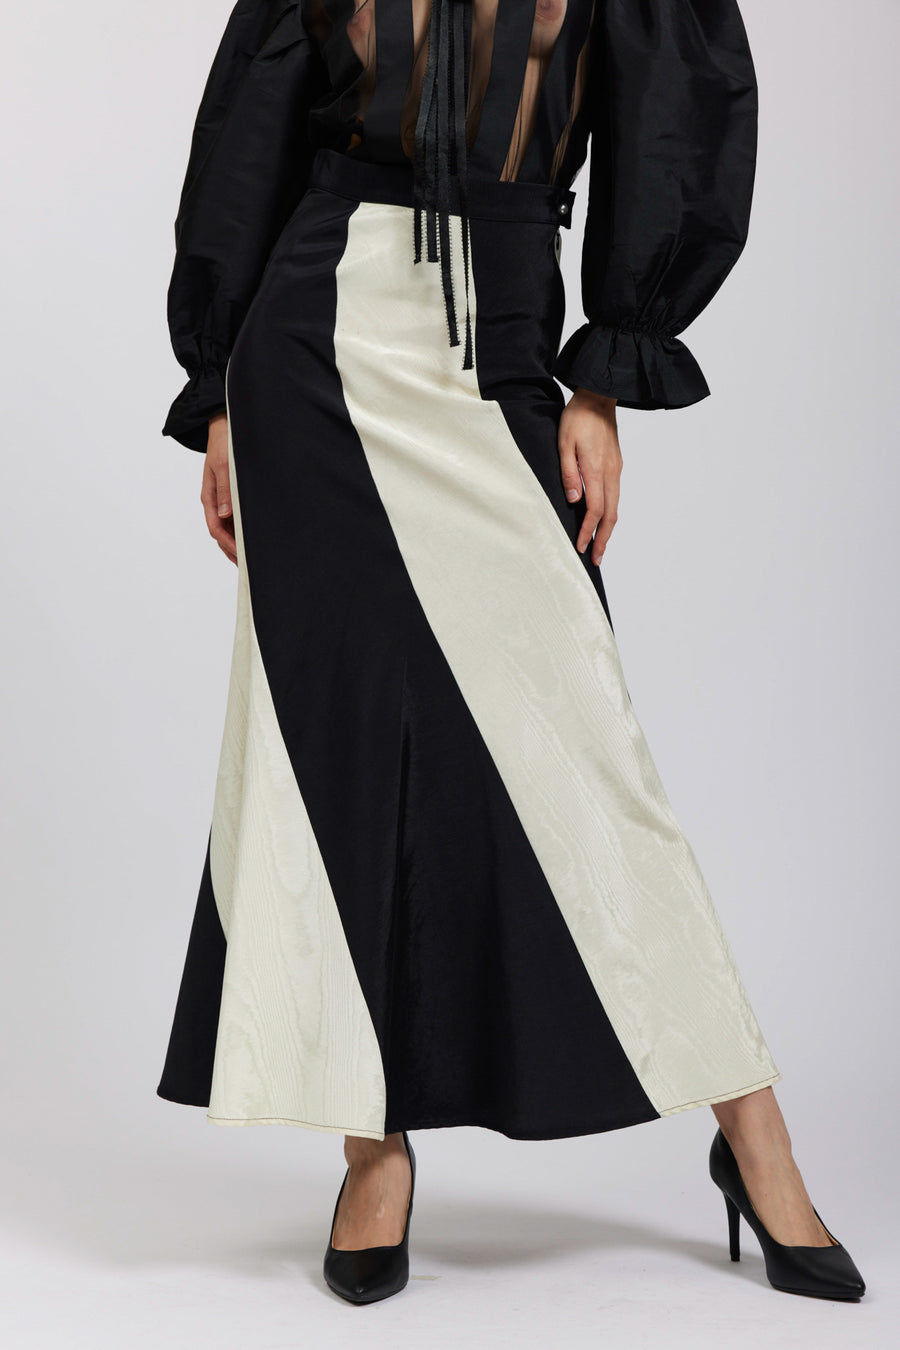 BATSHEVA - Cera Skirt in Cream & Black Moiré